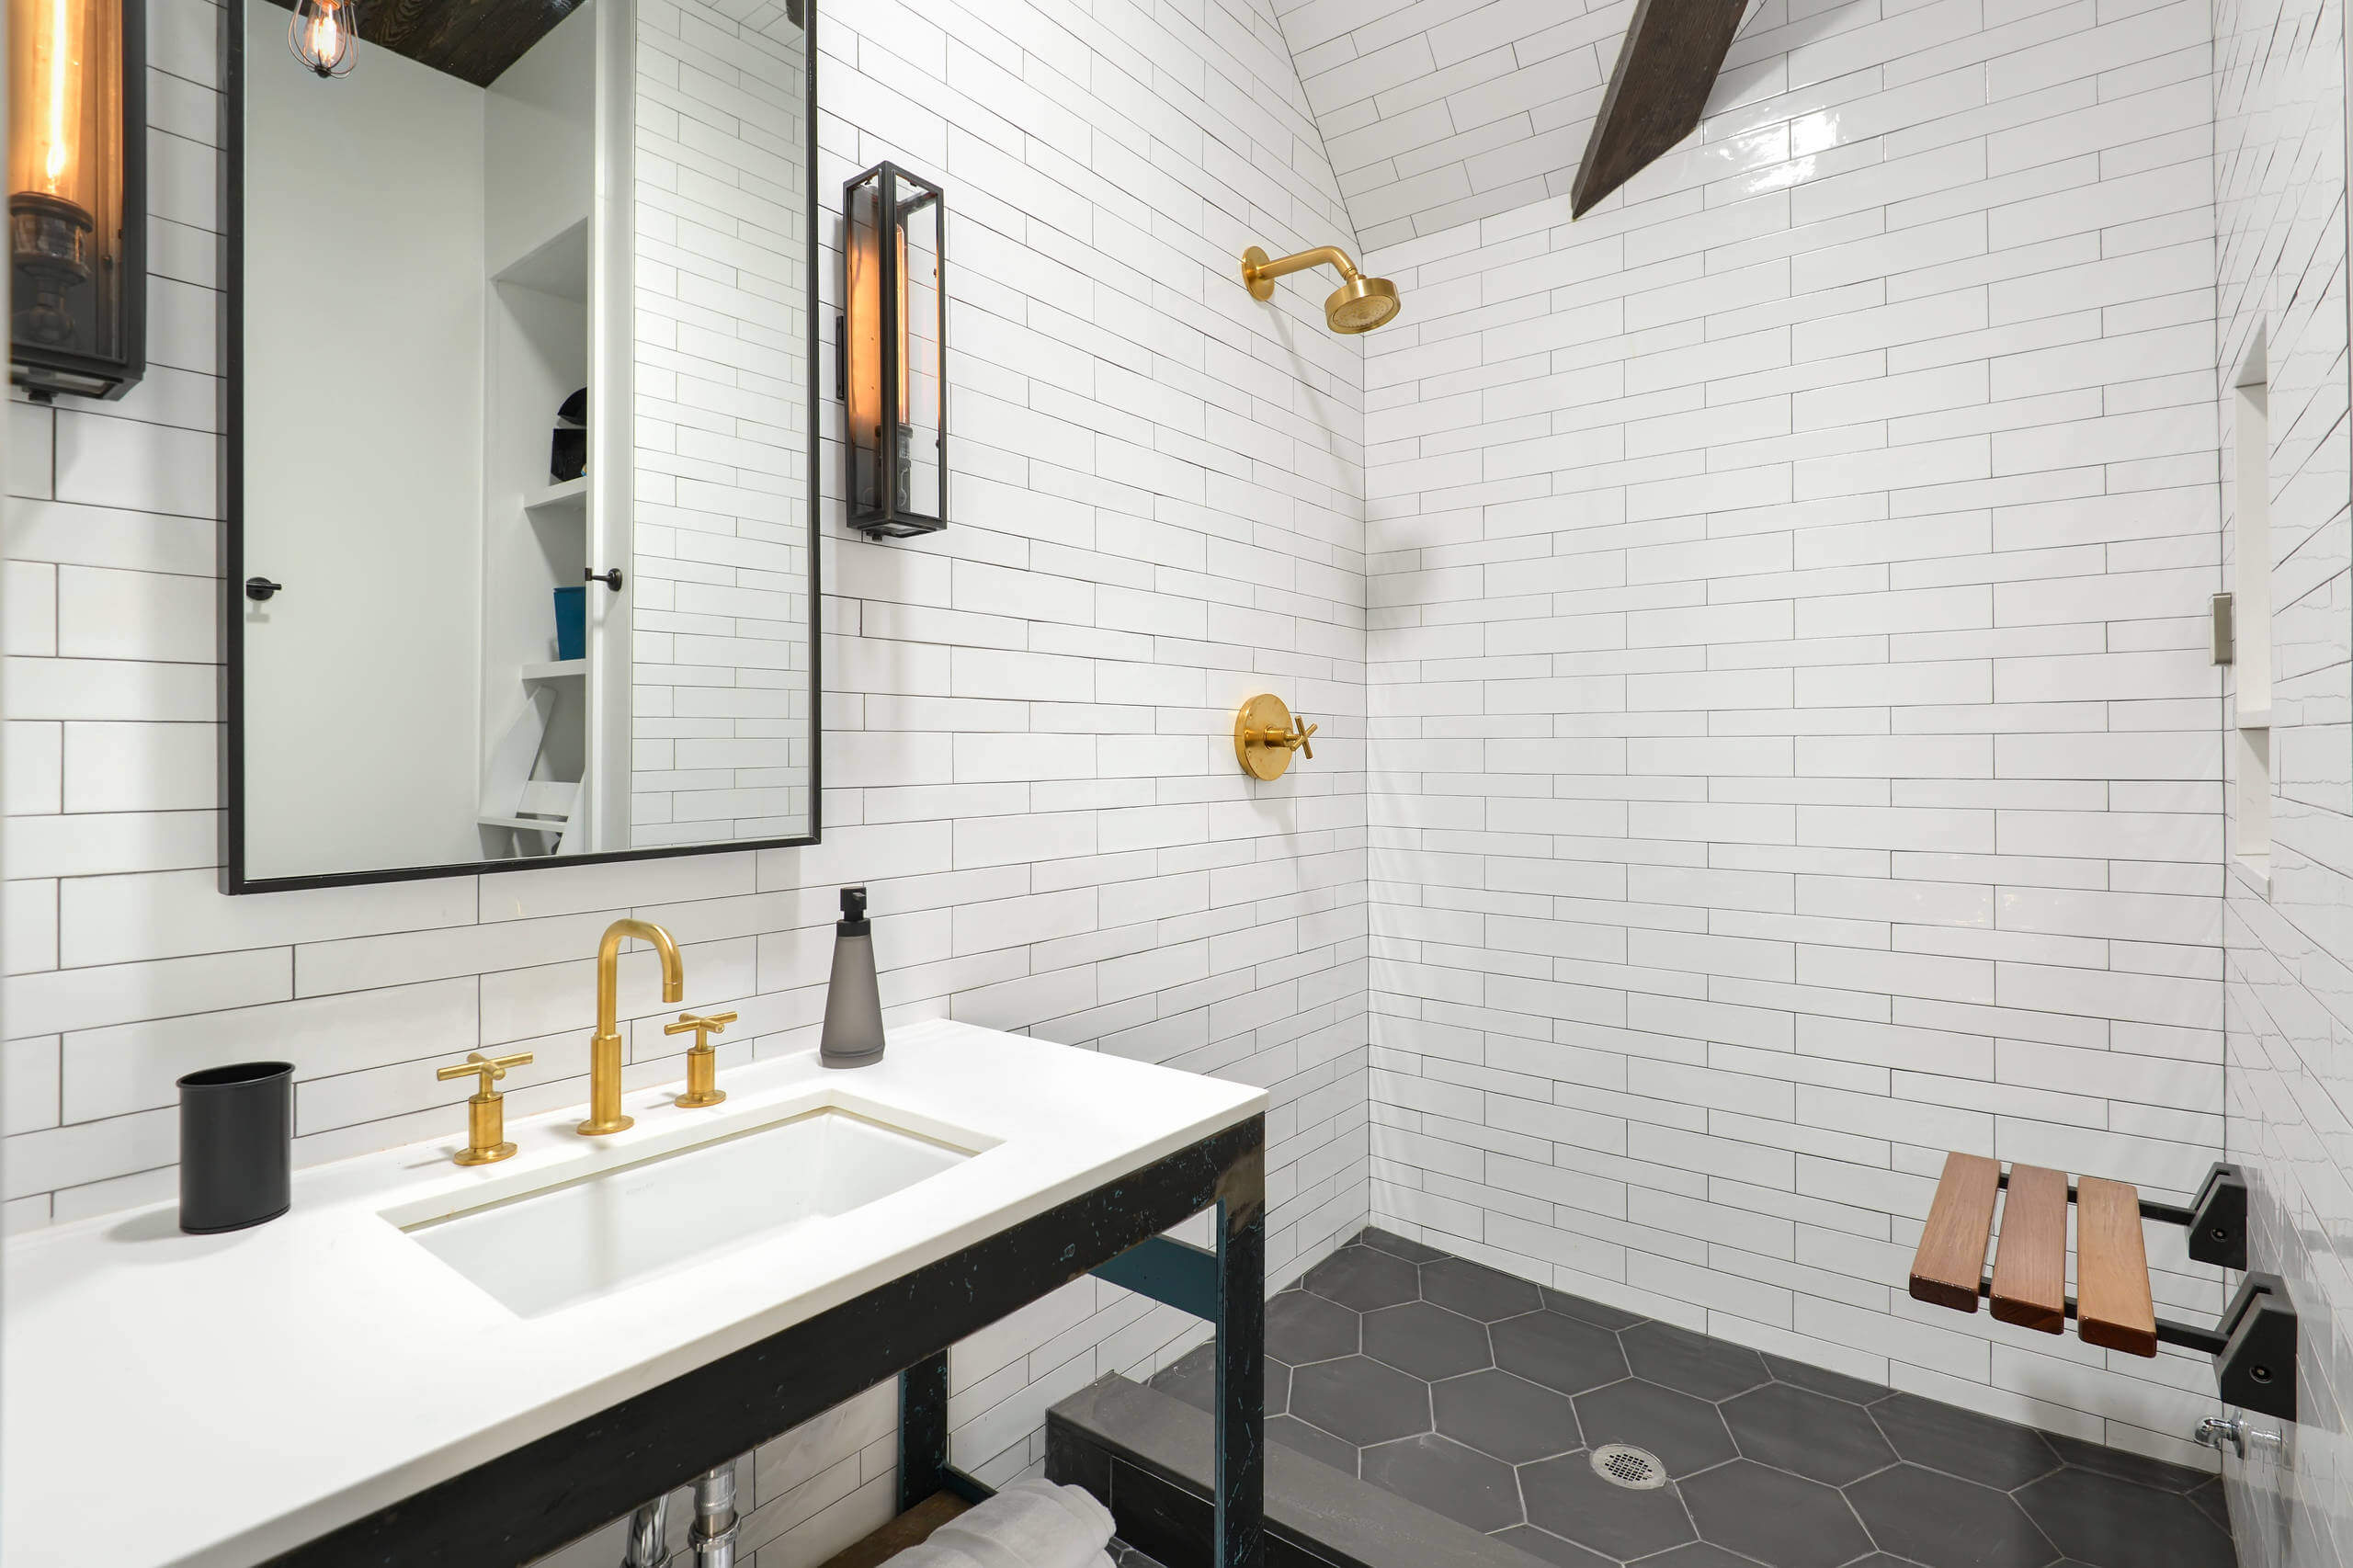 18 contemporary bathroom faucet designs